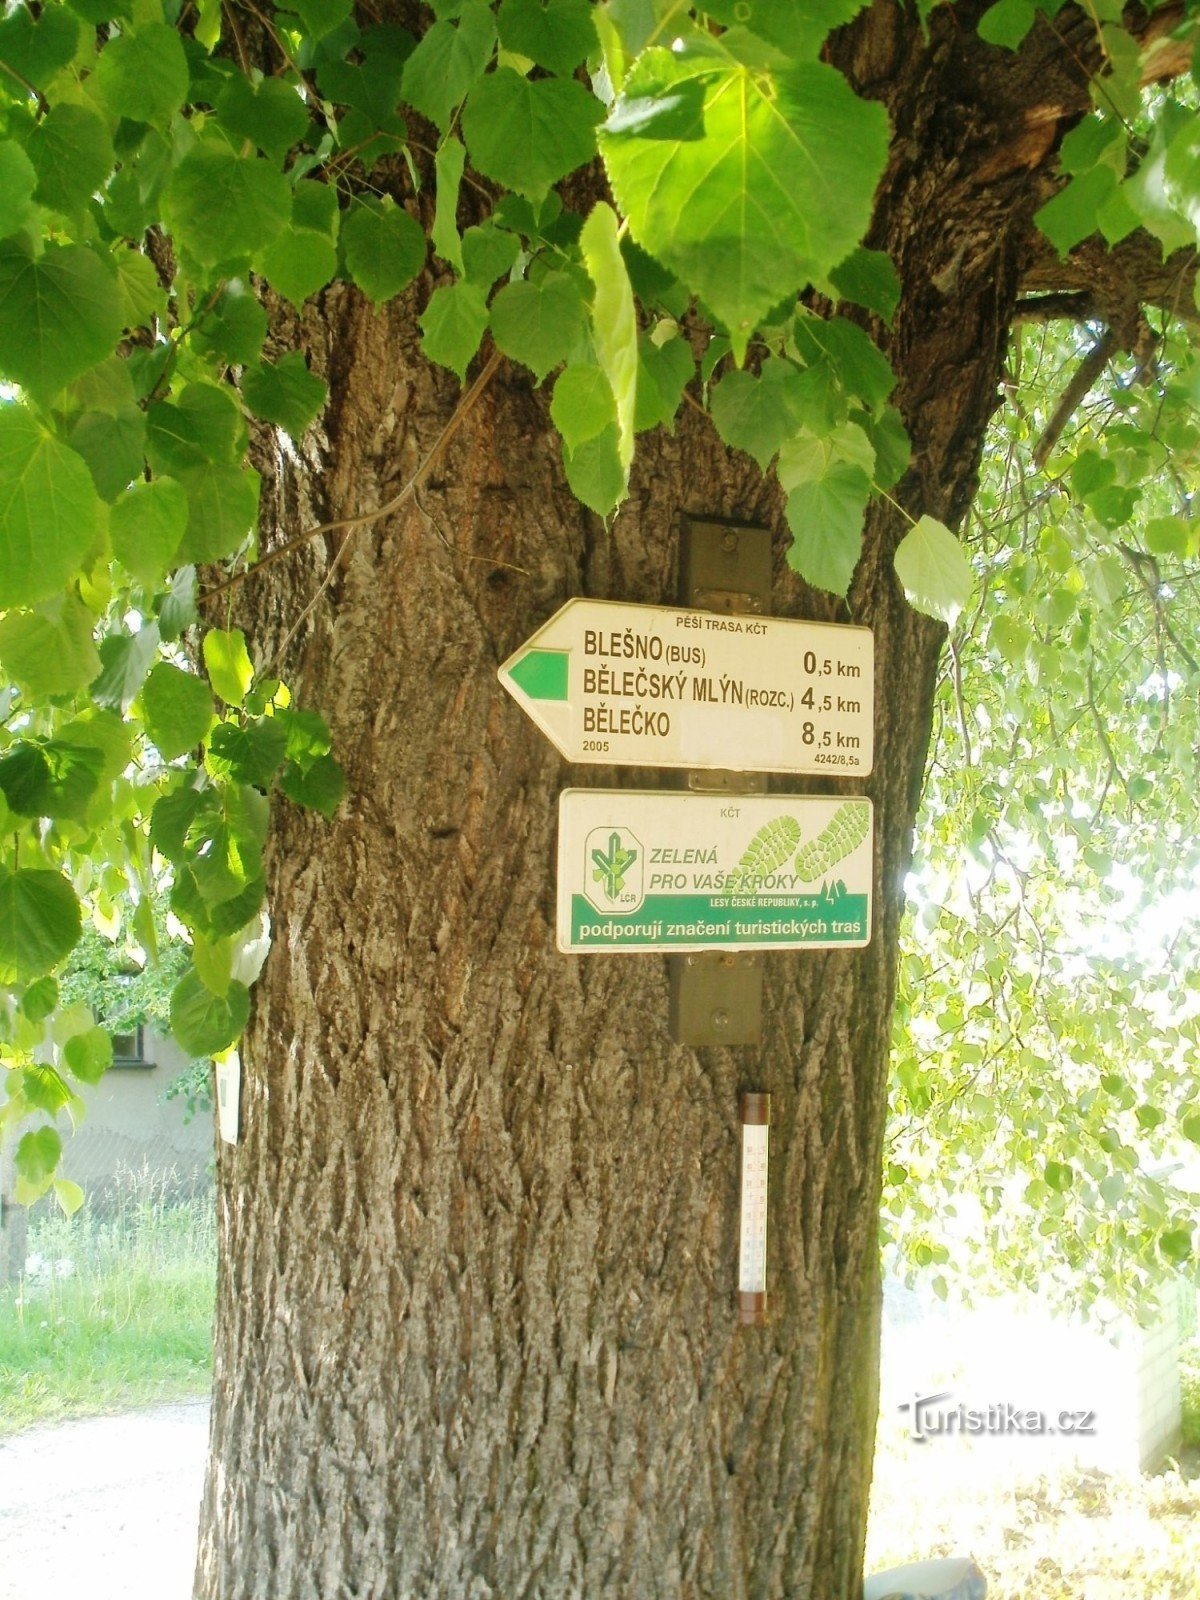 観光交差点 Blešno - 鉄道